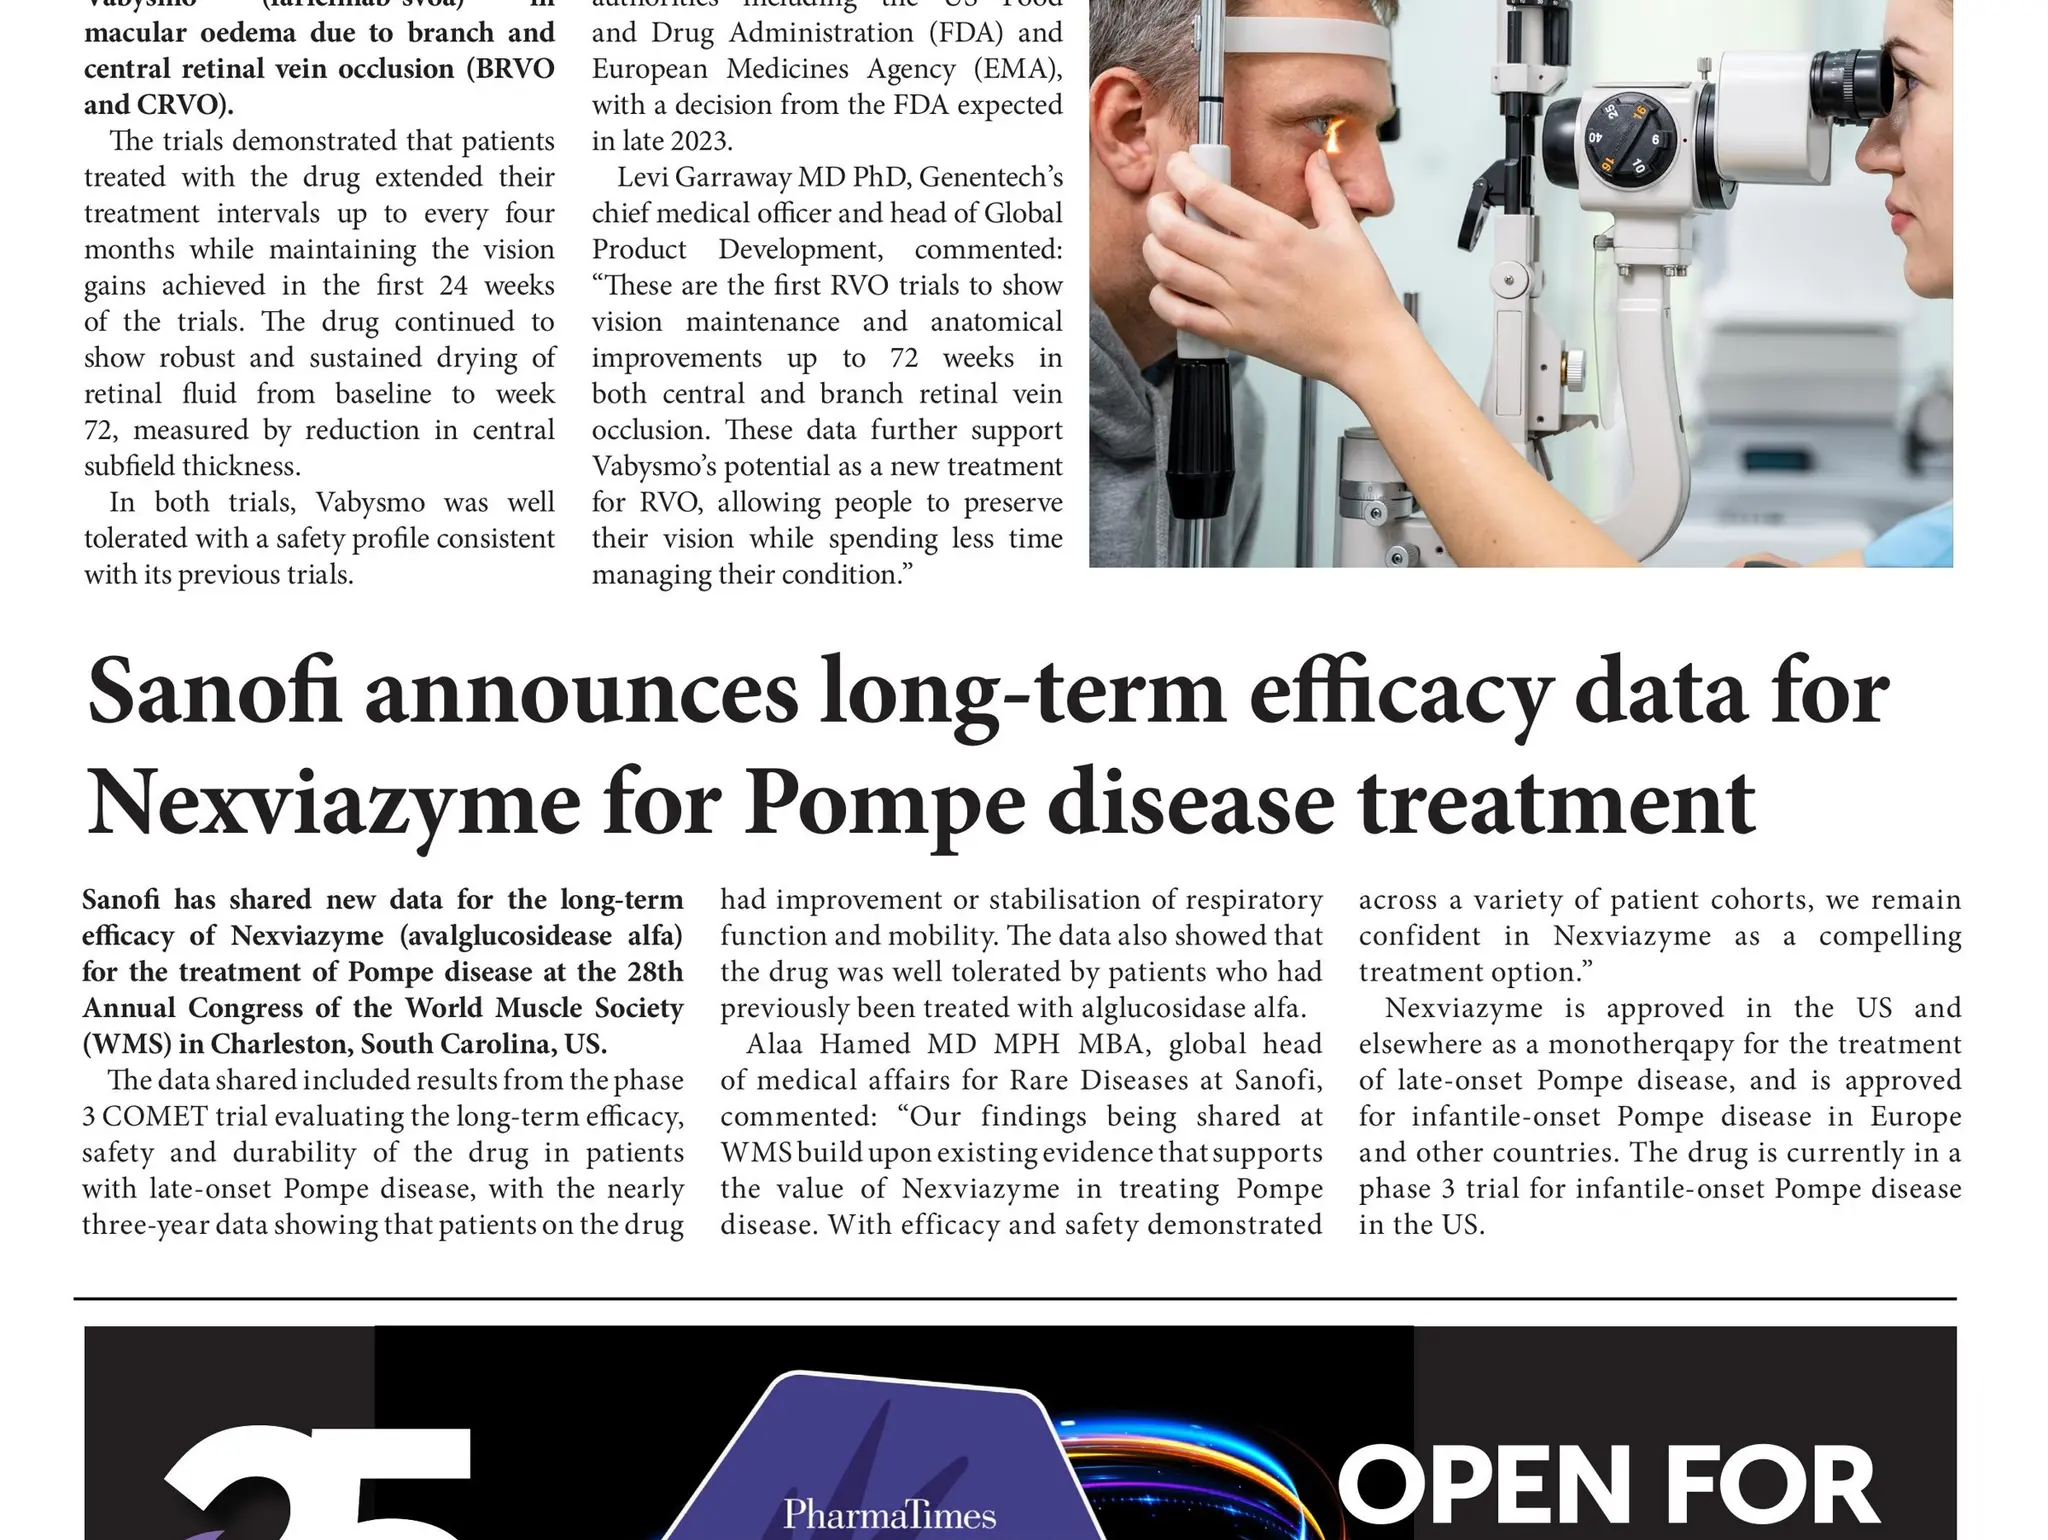 Sanofi announces long-term efficacy data for Nexviazyme for Pompe disease treatment